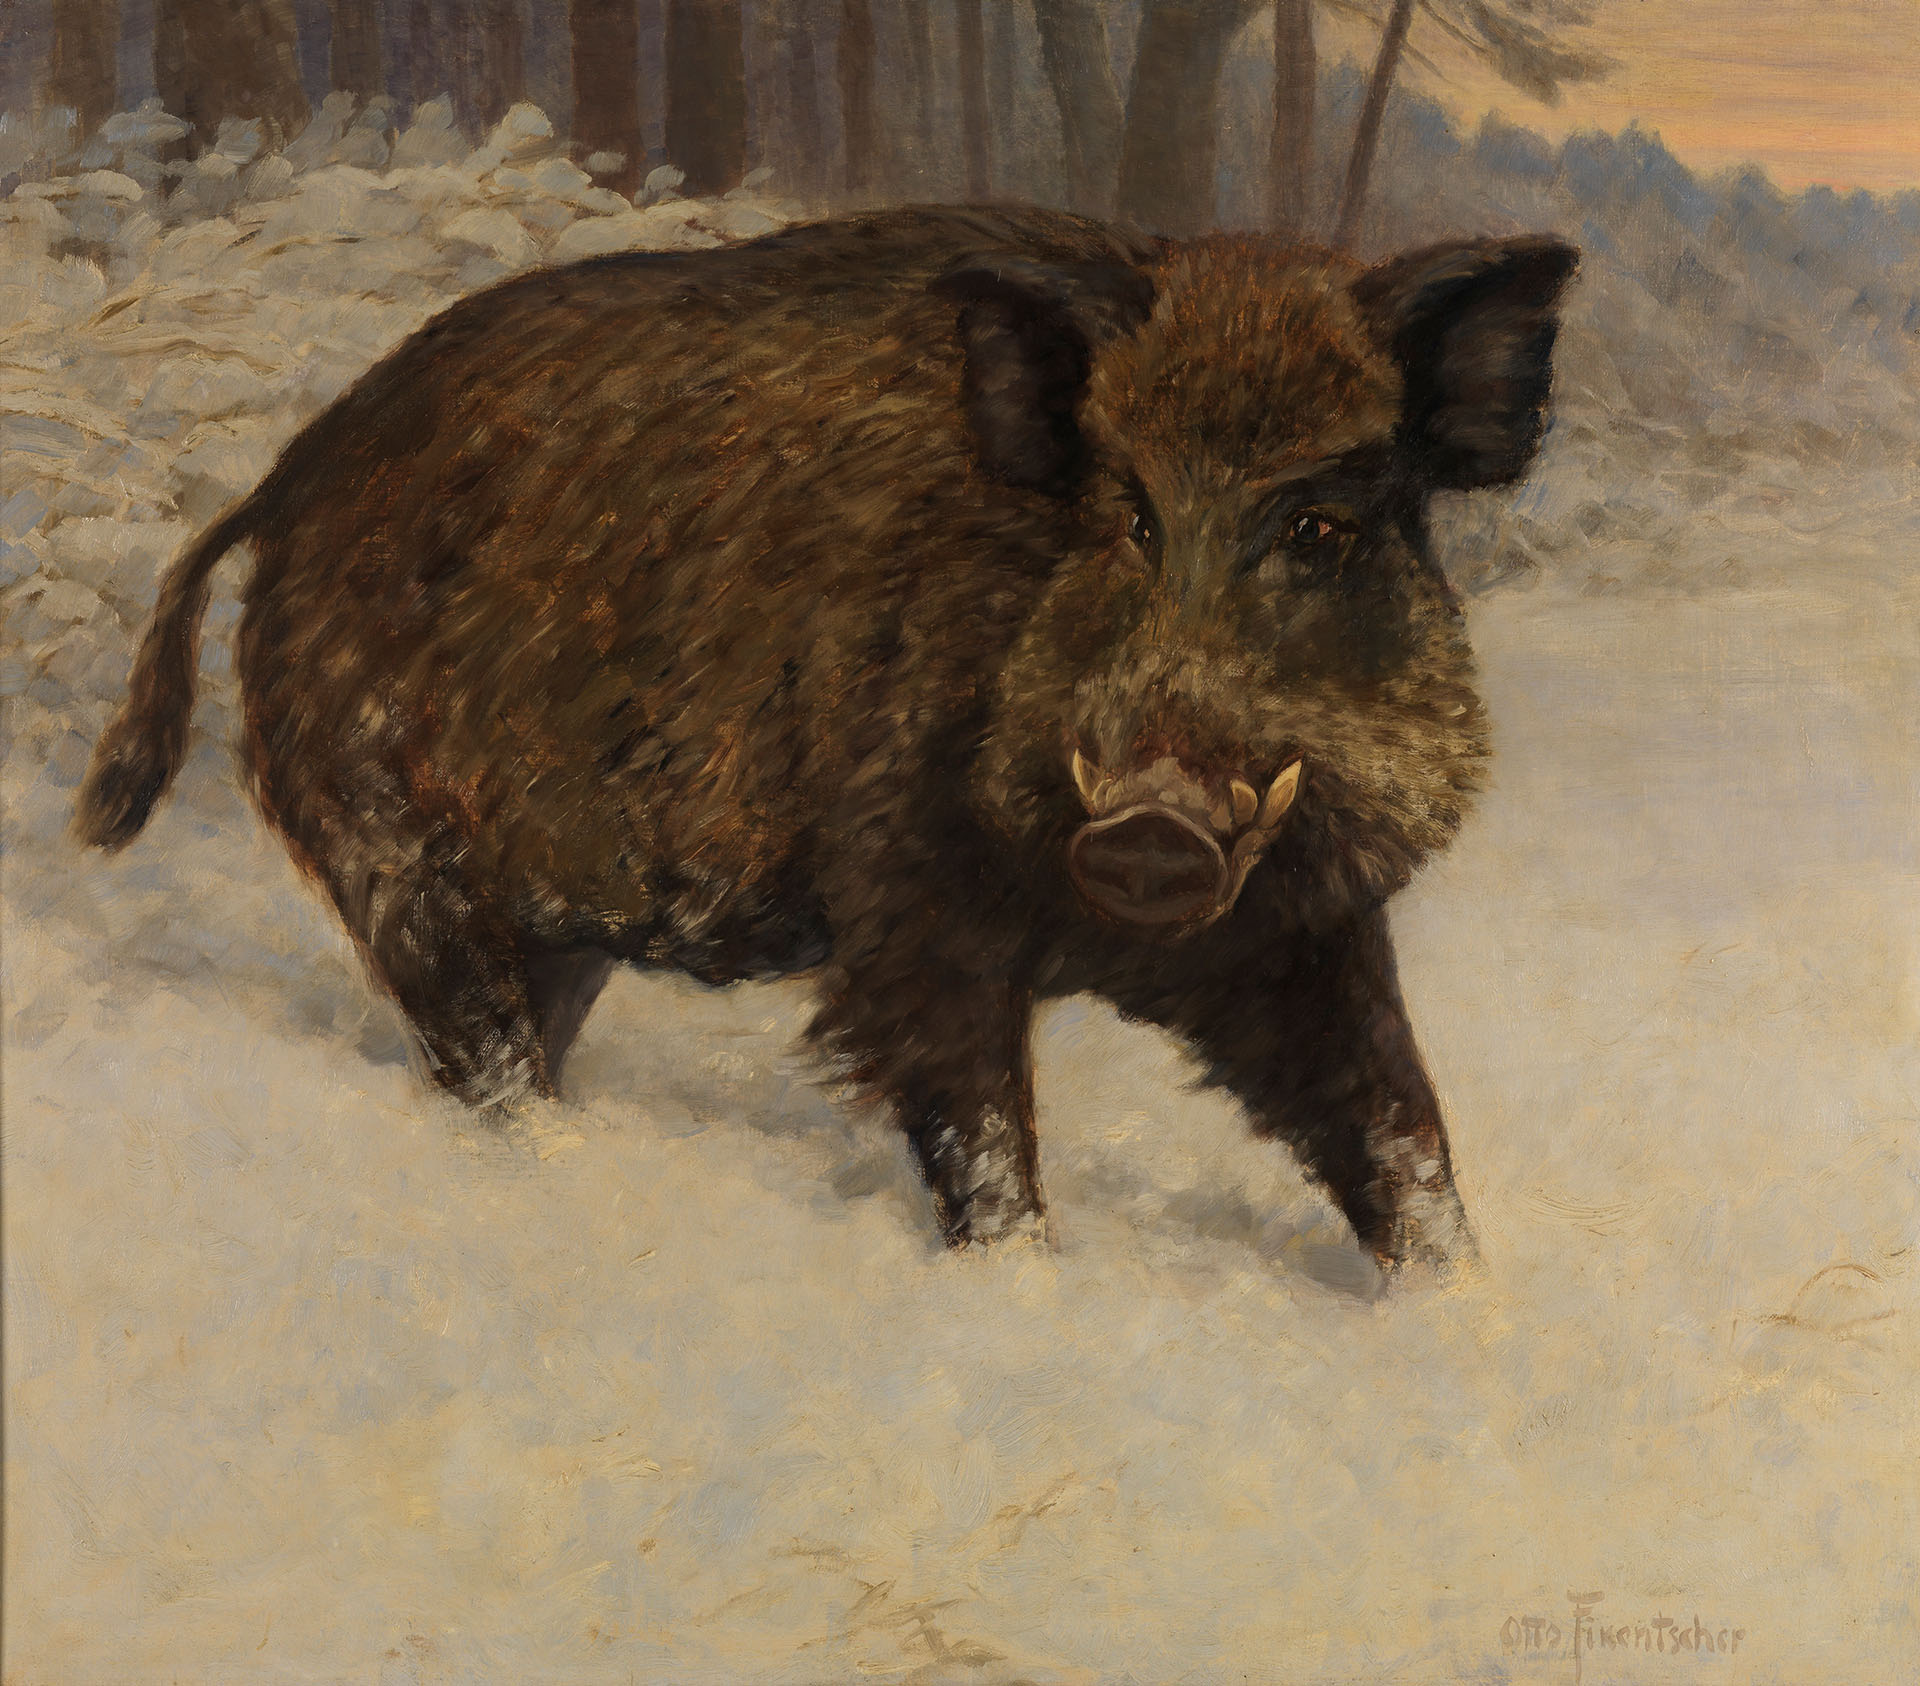 Gemälde von Otto Fikentscher, das ein Wildschwein im Schnee zeigt